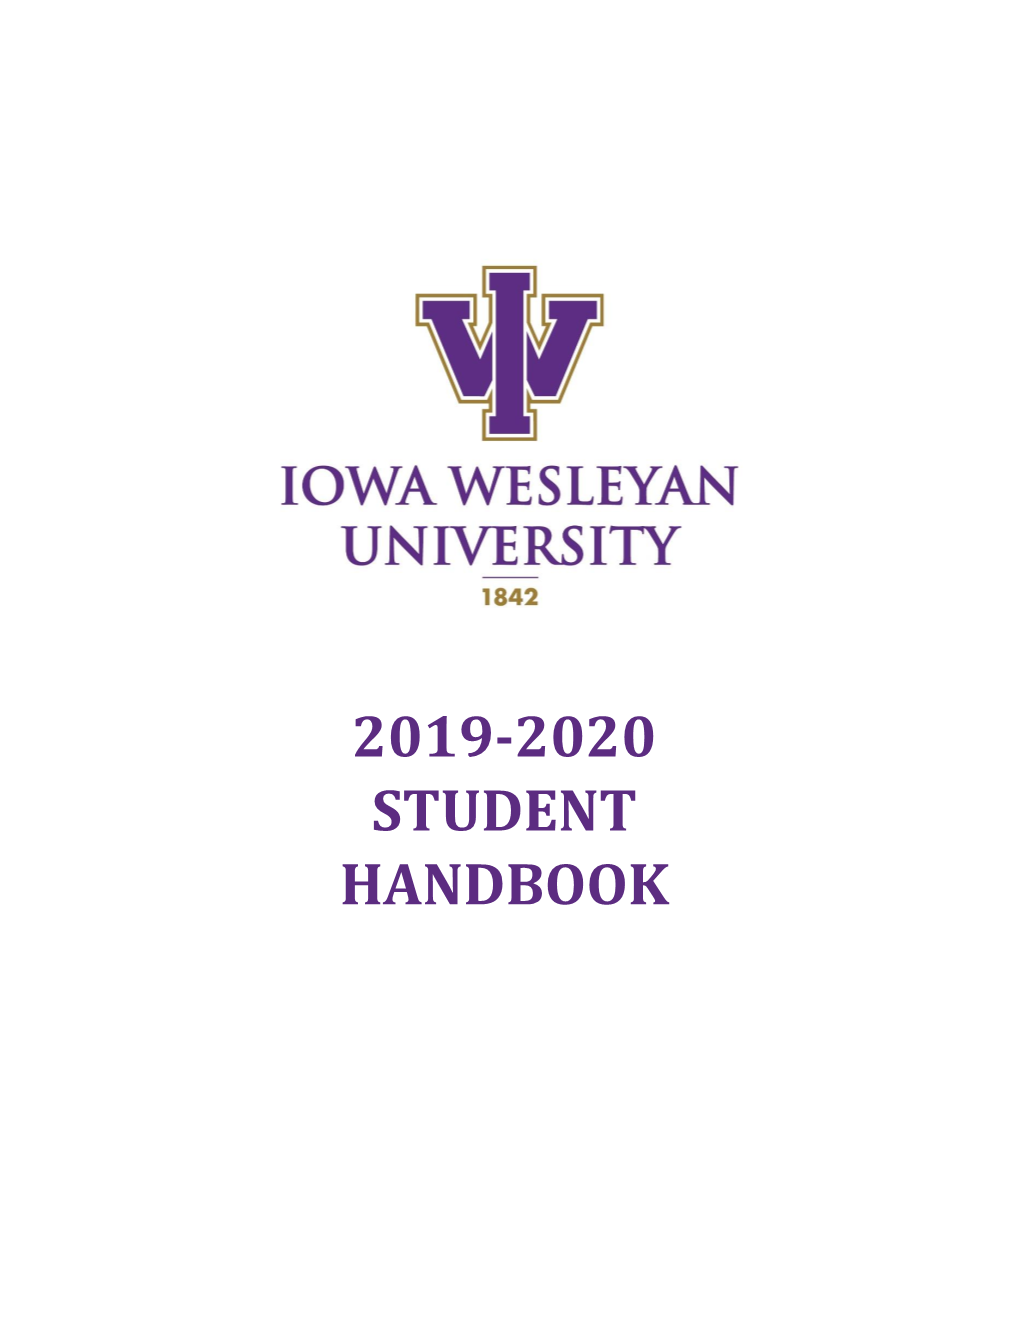 2019-2020 Student Handbook